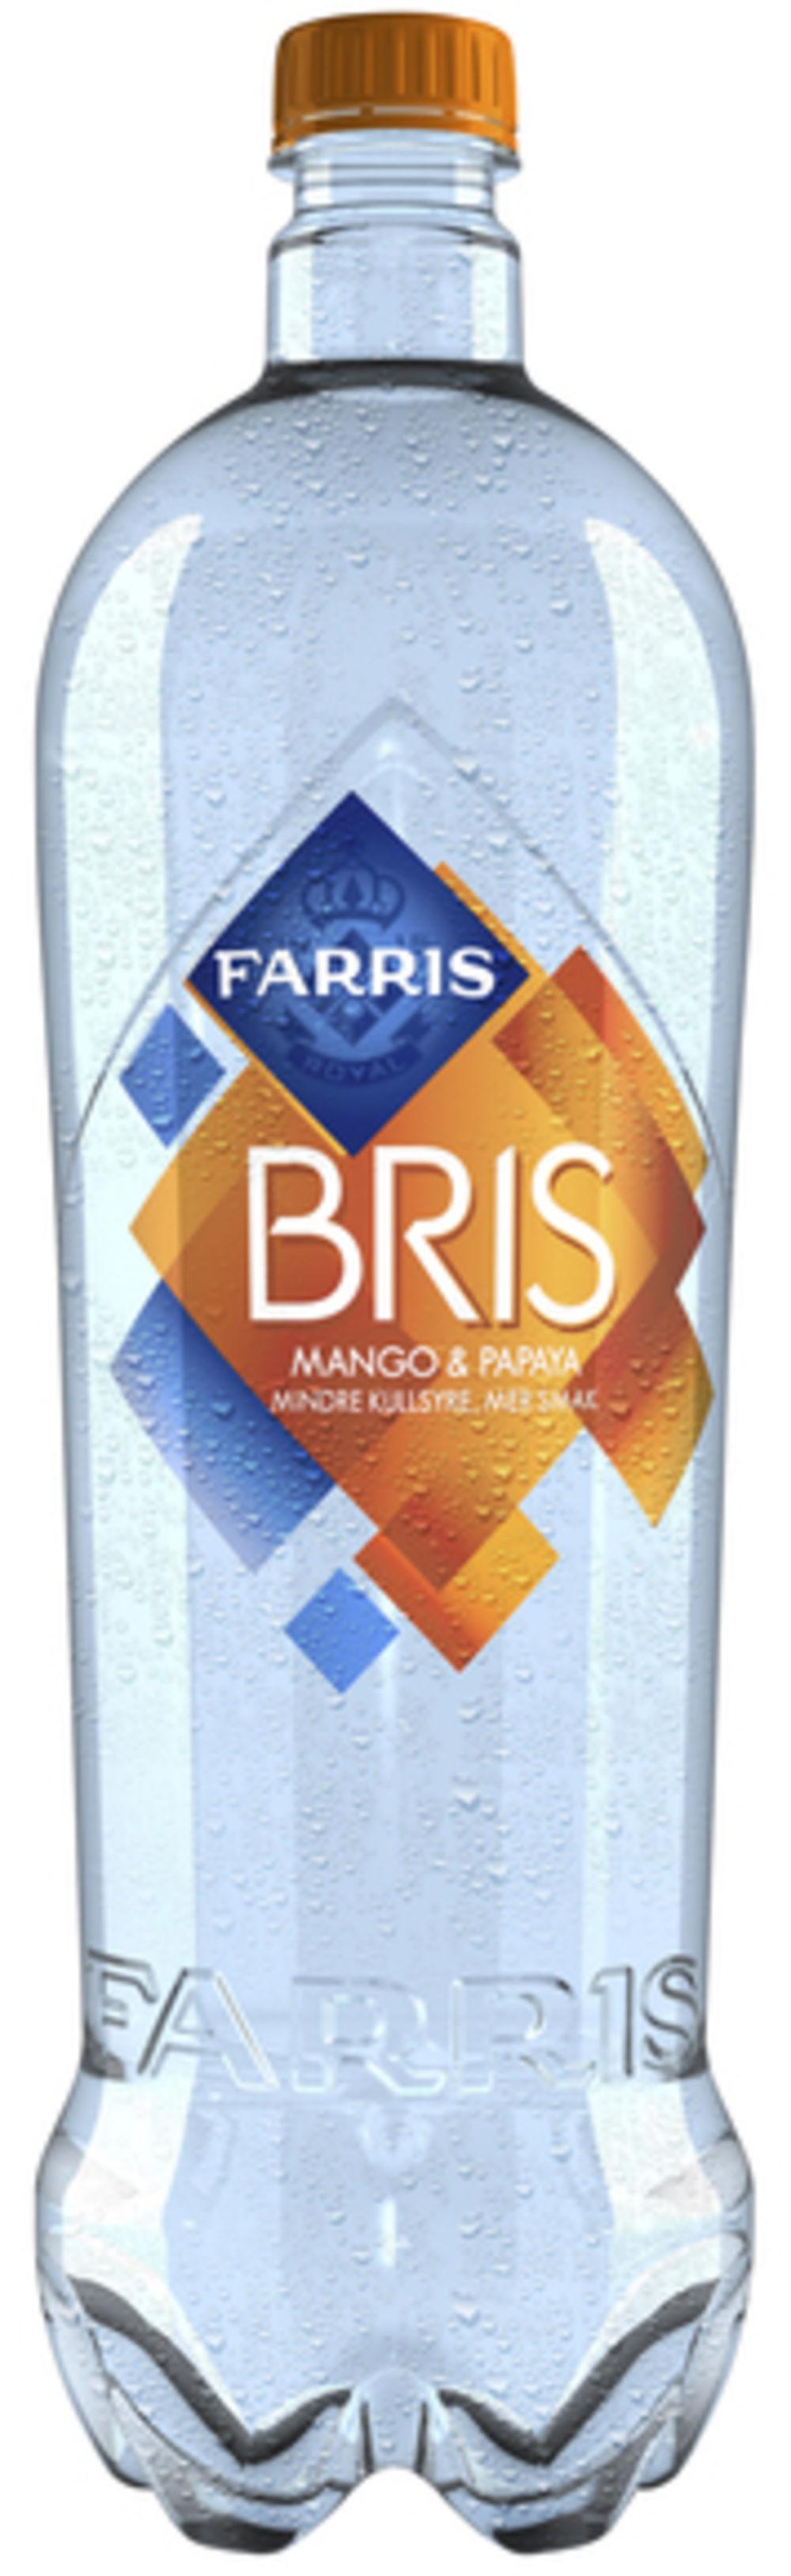 Farris Bris Mango Papaya 1,5 l - inkl. pant